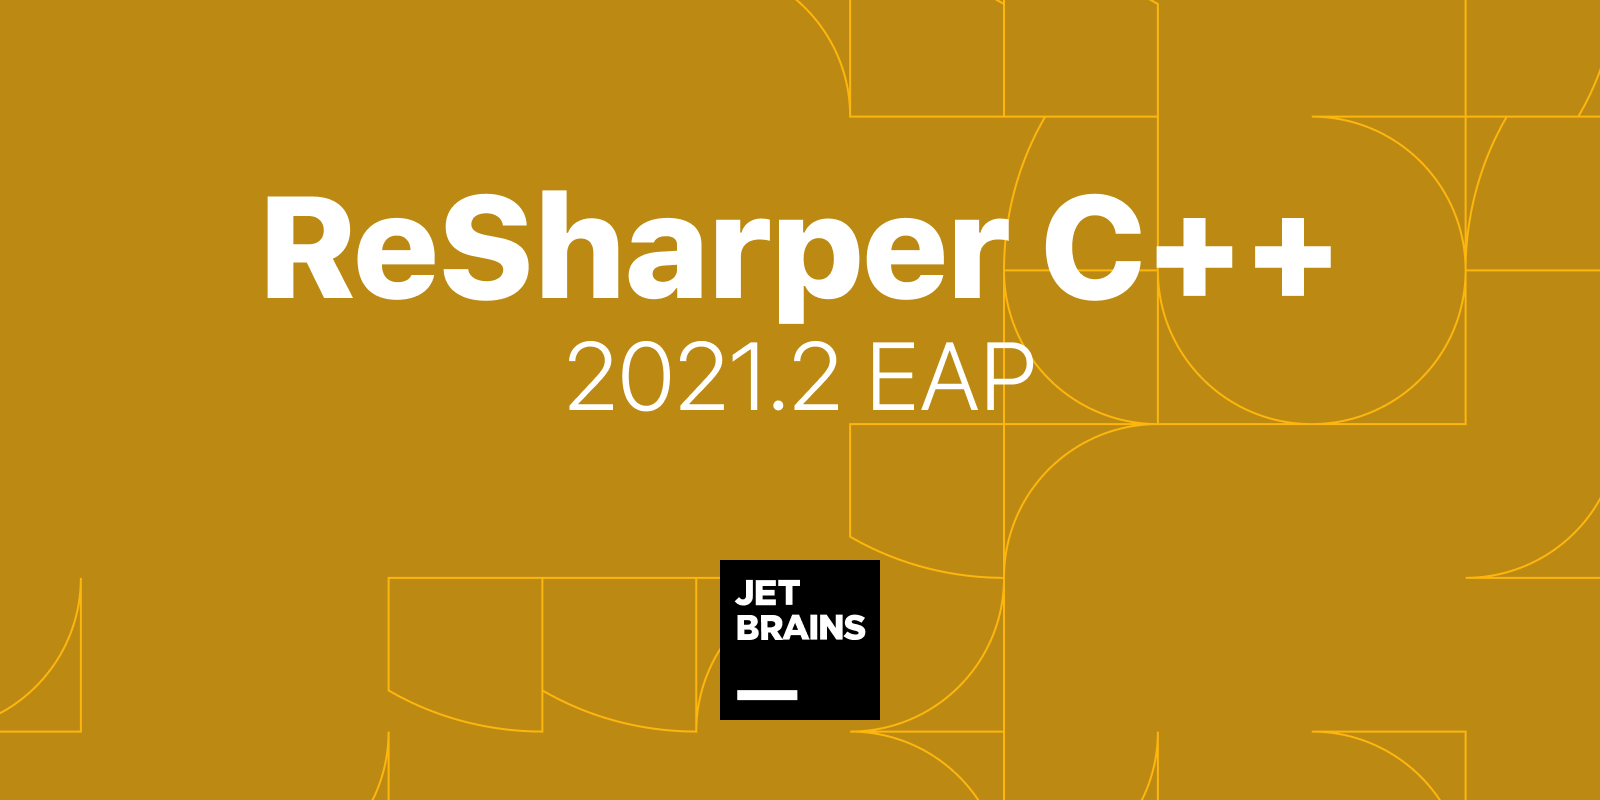 ReSharper C++ 2021.2 EAP